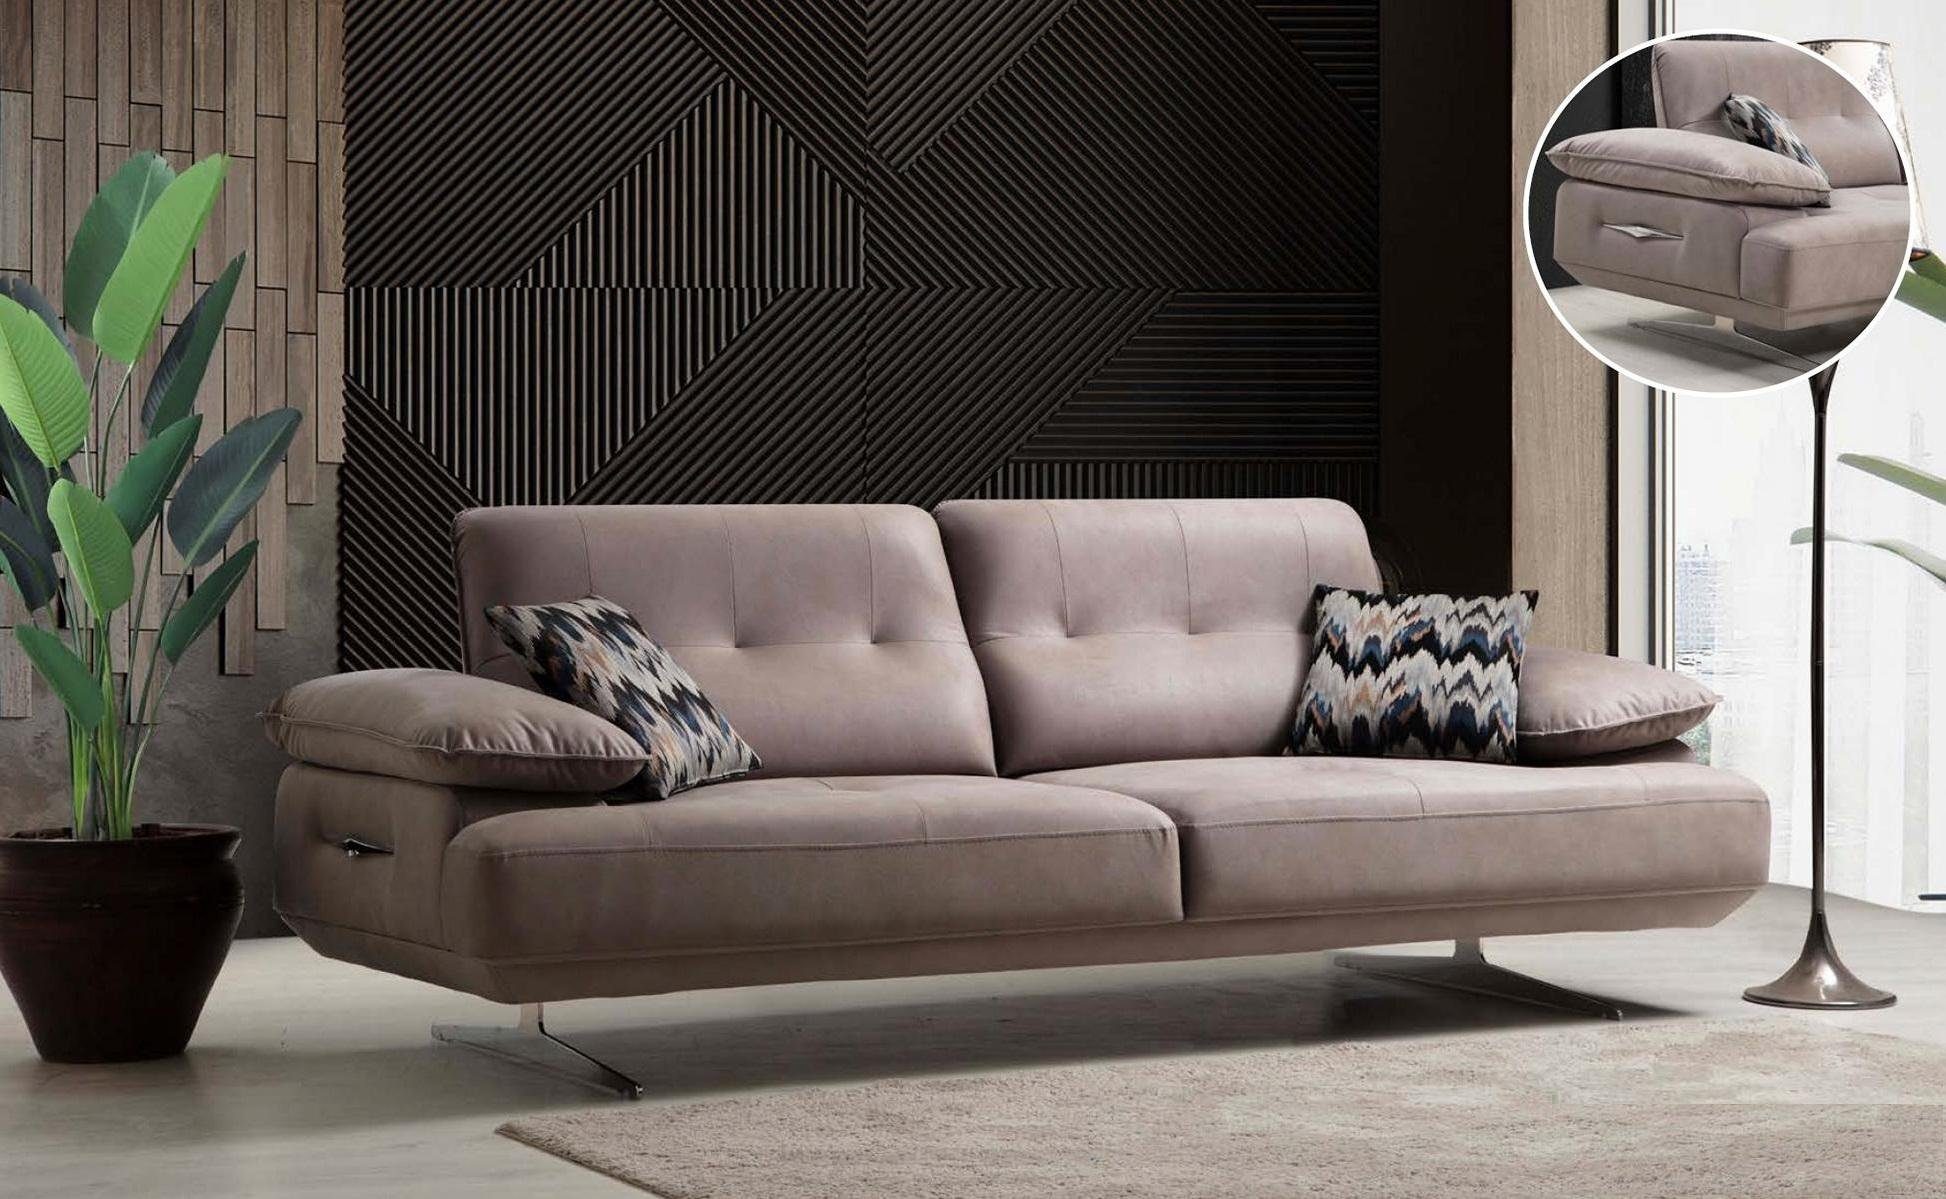 JVmoebel Sofa Italienischer Stil Möbel Dreisitzer Couch Polster Sofa Luxus Couch, Made in Europe